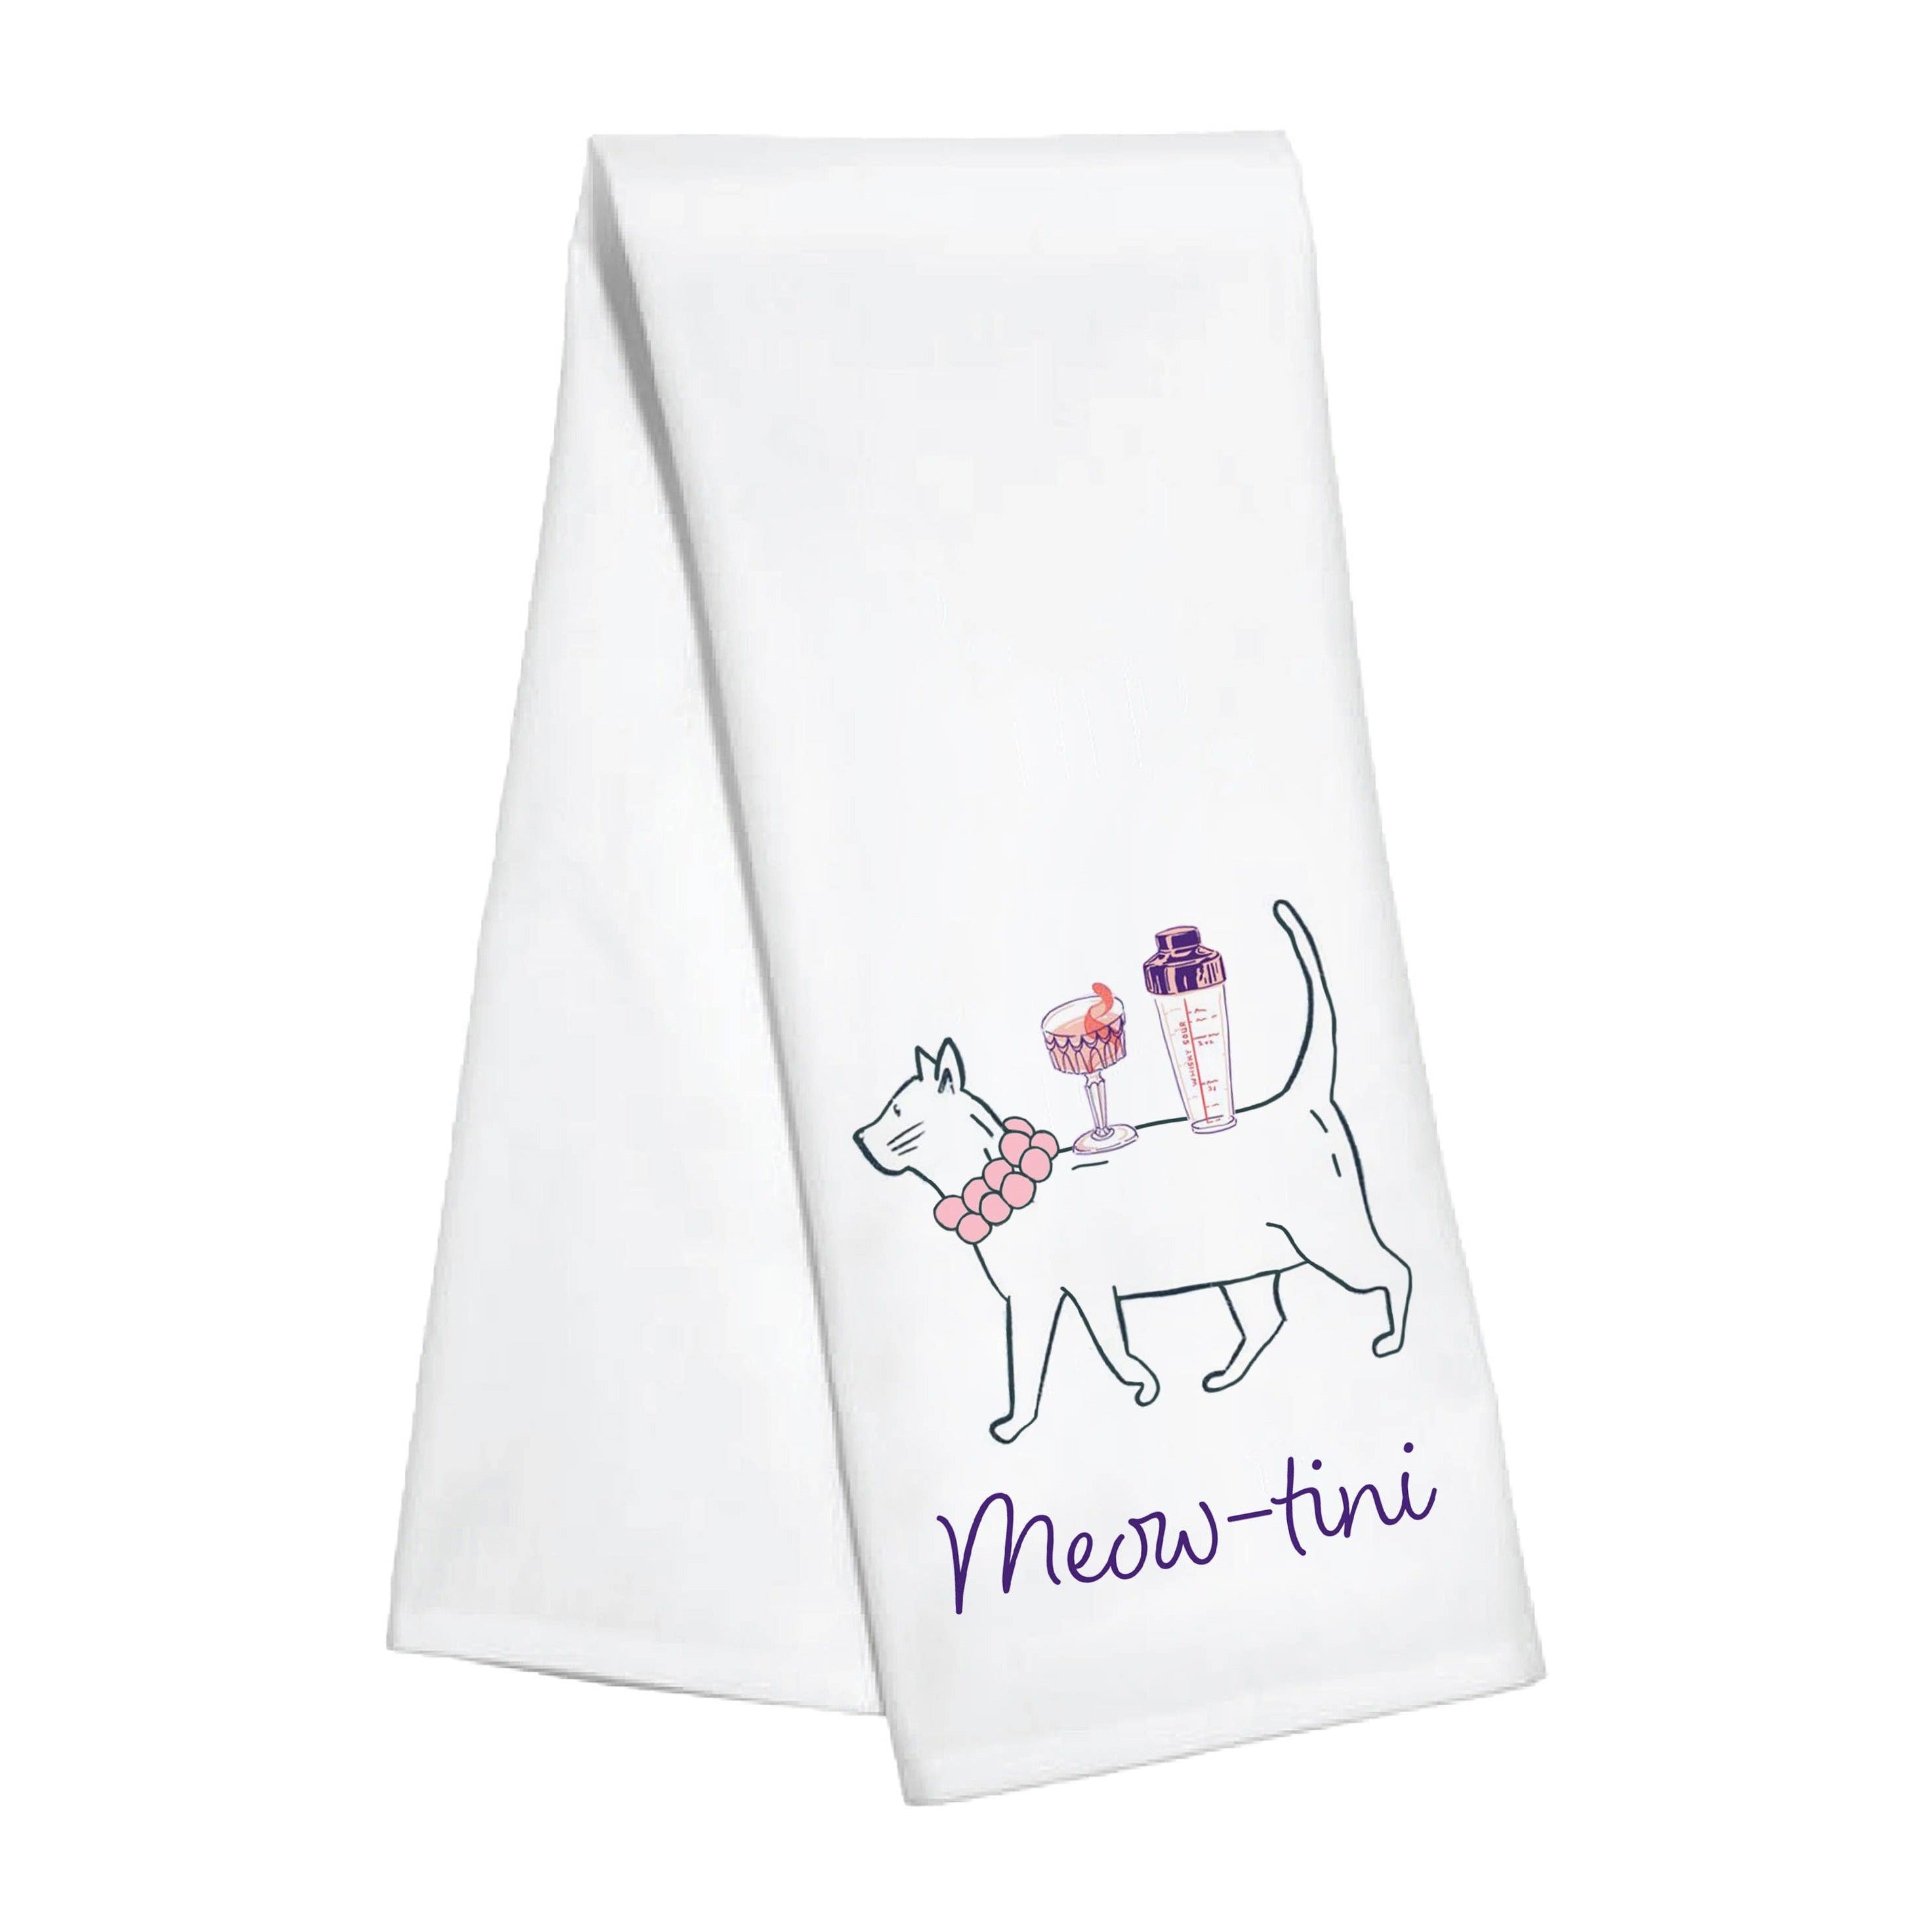 Meow-tini Kitchen Towel front white | MILK MONEY milkmoney.co | white elephant gift ideas, gift, mother's day gift ideas, white elephant gift, gift shops near me